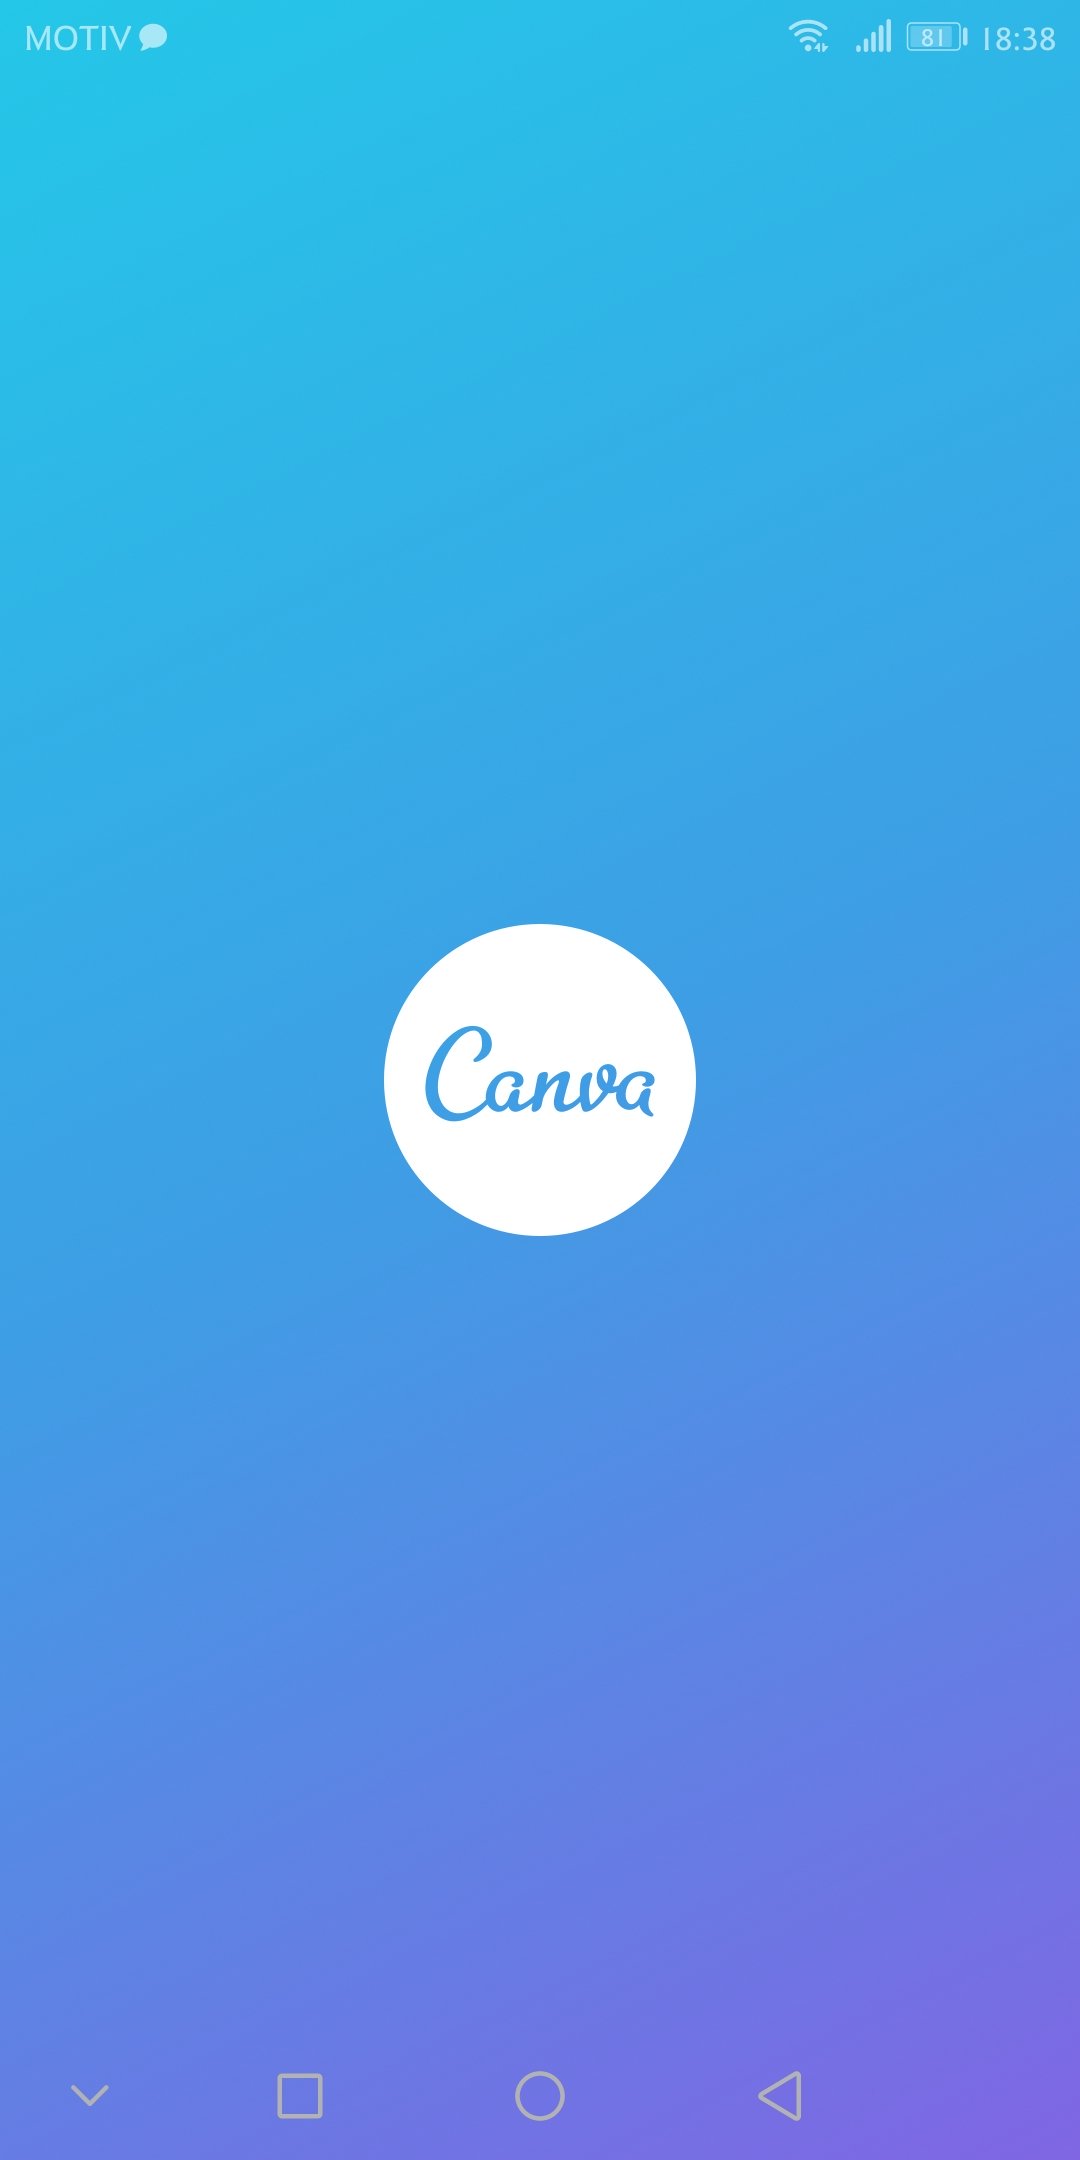  Обзор приложения Canva - продвинутый фотошоп в кармане Мультимедиа  - Screenshot_20190109-1838491